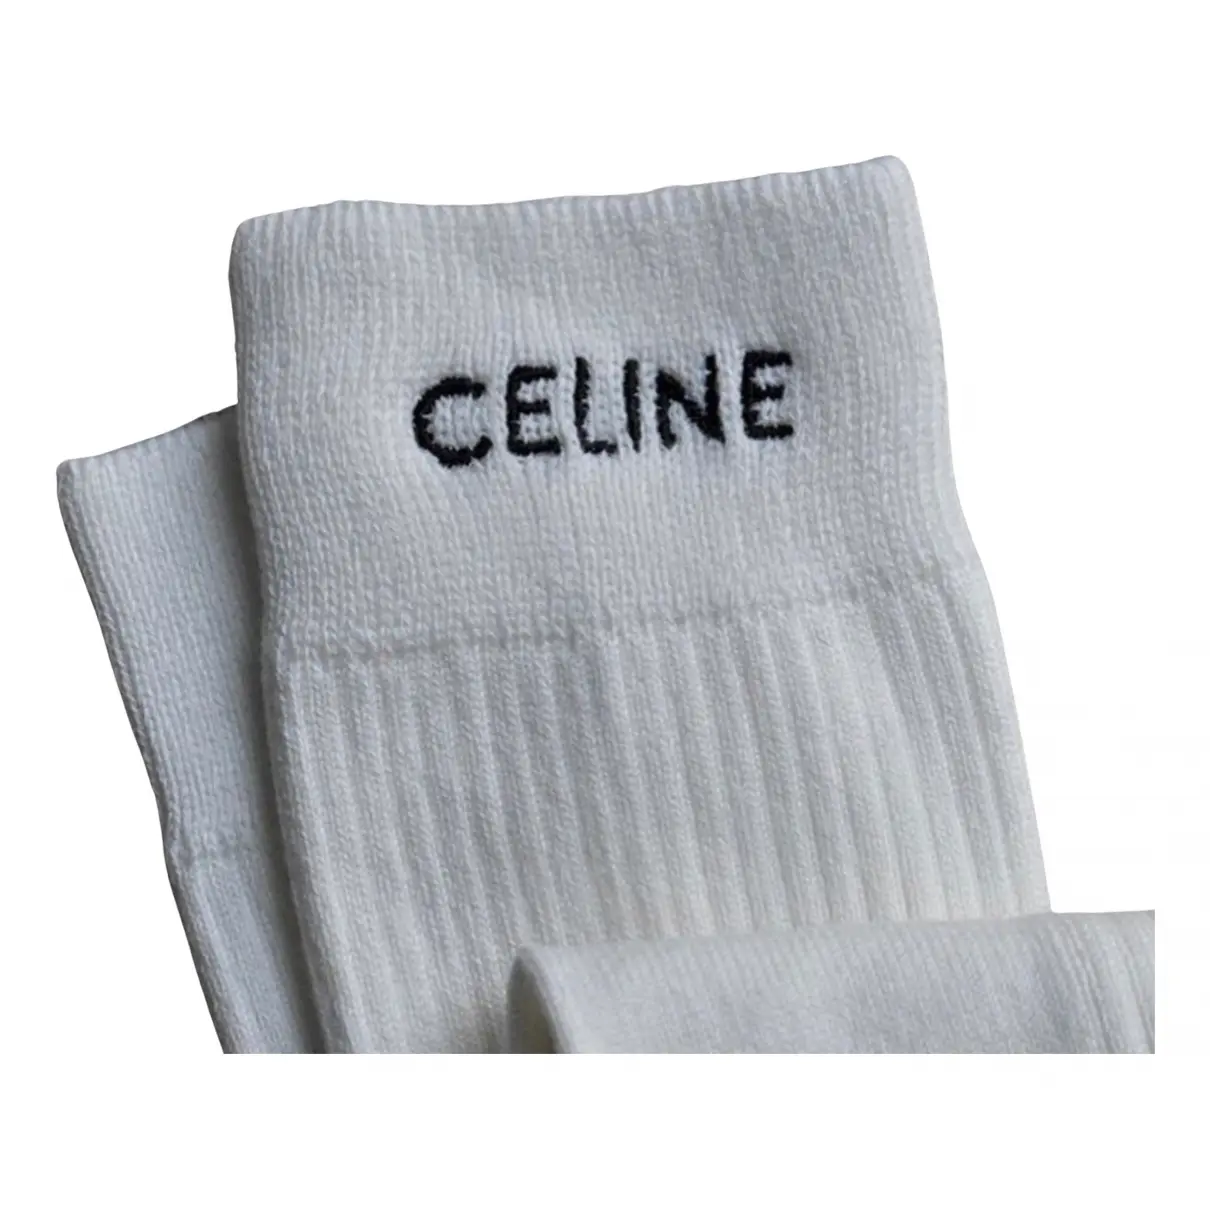 Buy Celine Tennis online